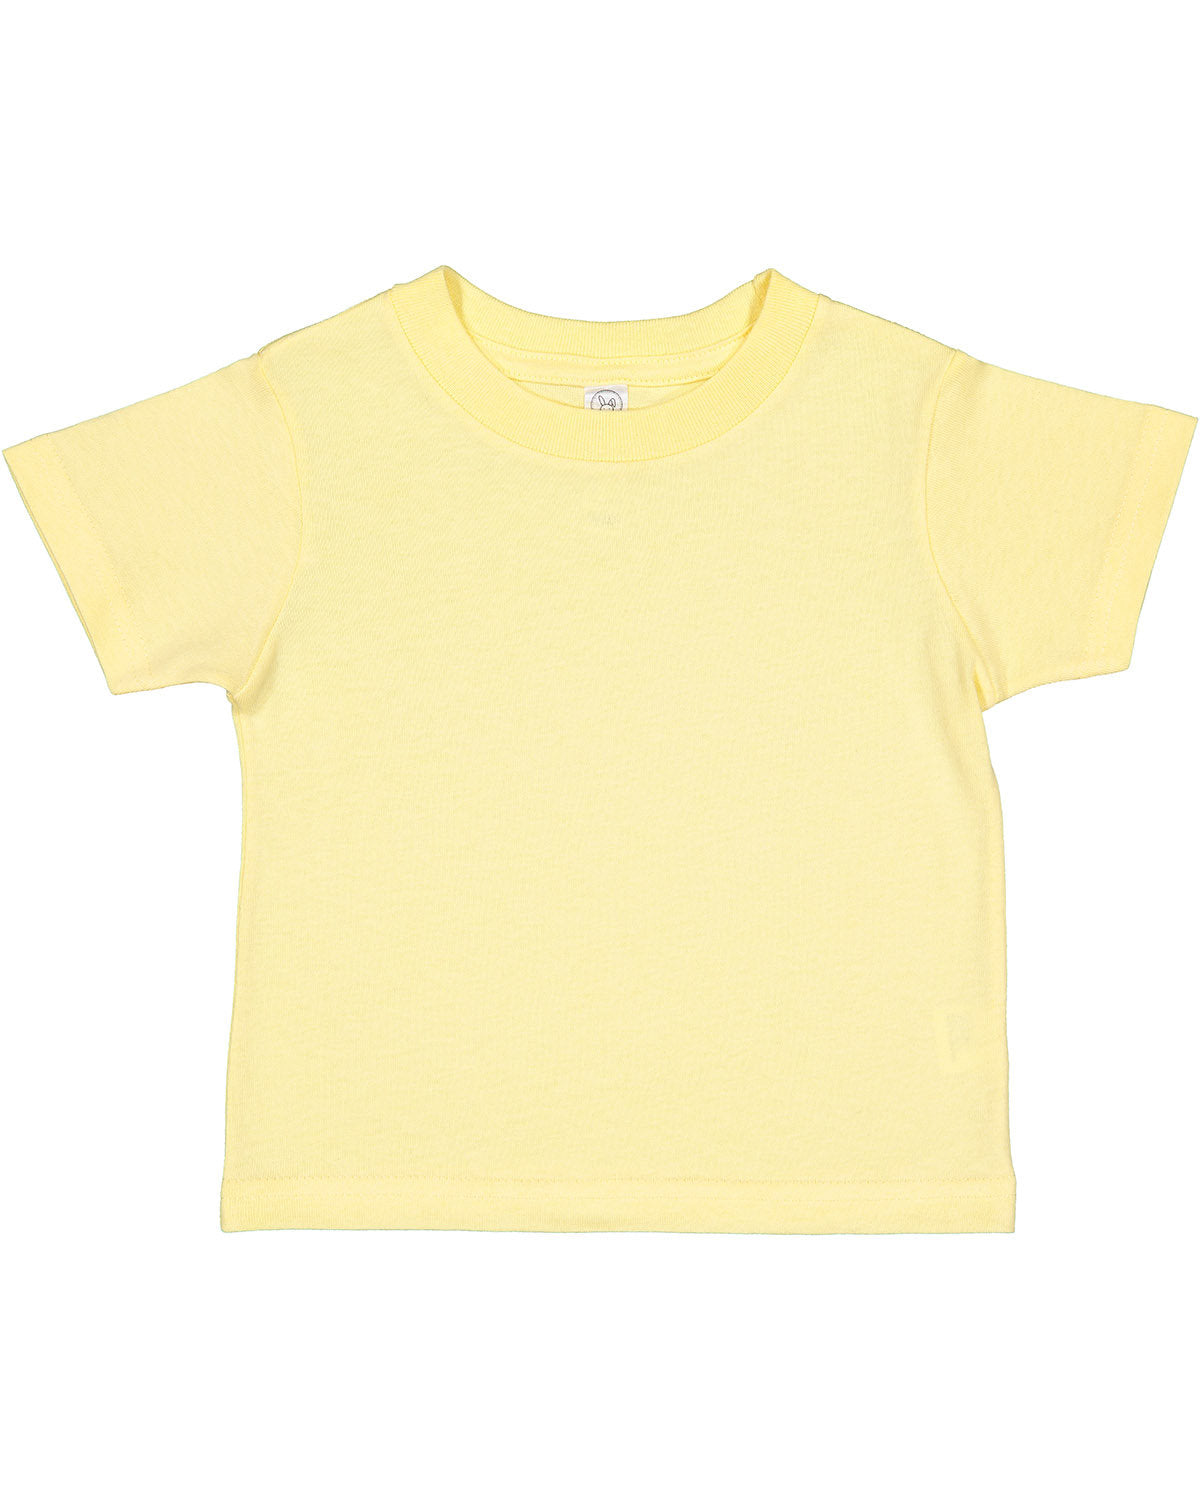 Rabbit Skins Toddler Cotton Jersey T-Shirt 2T / Banana